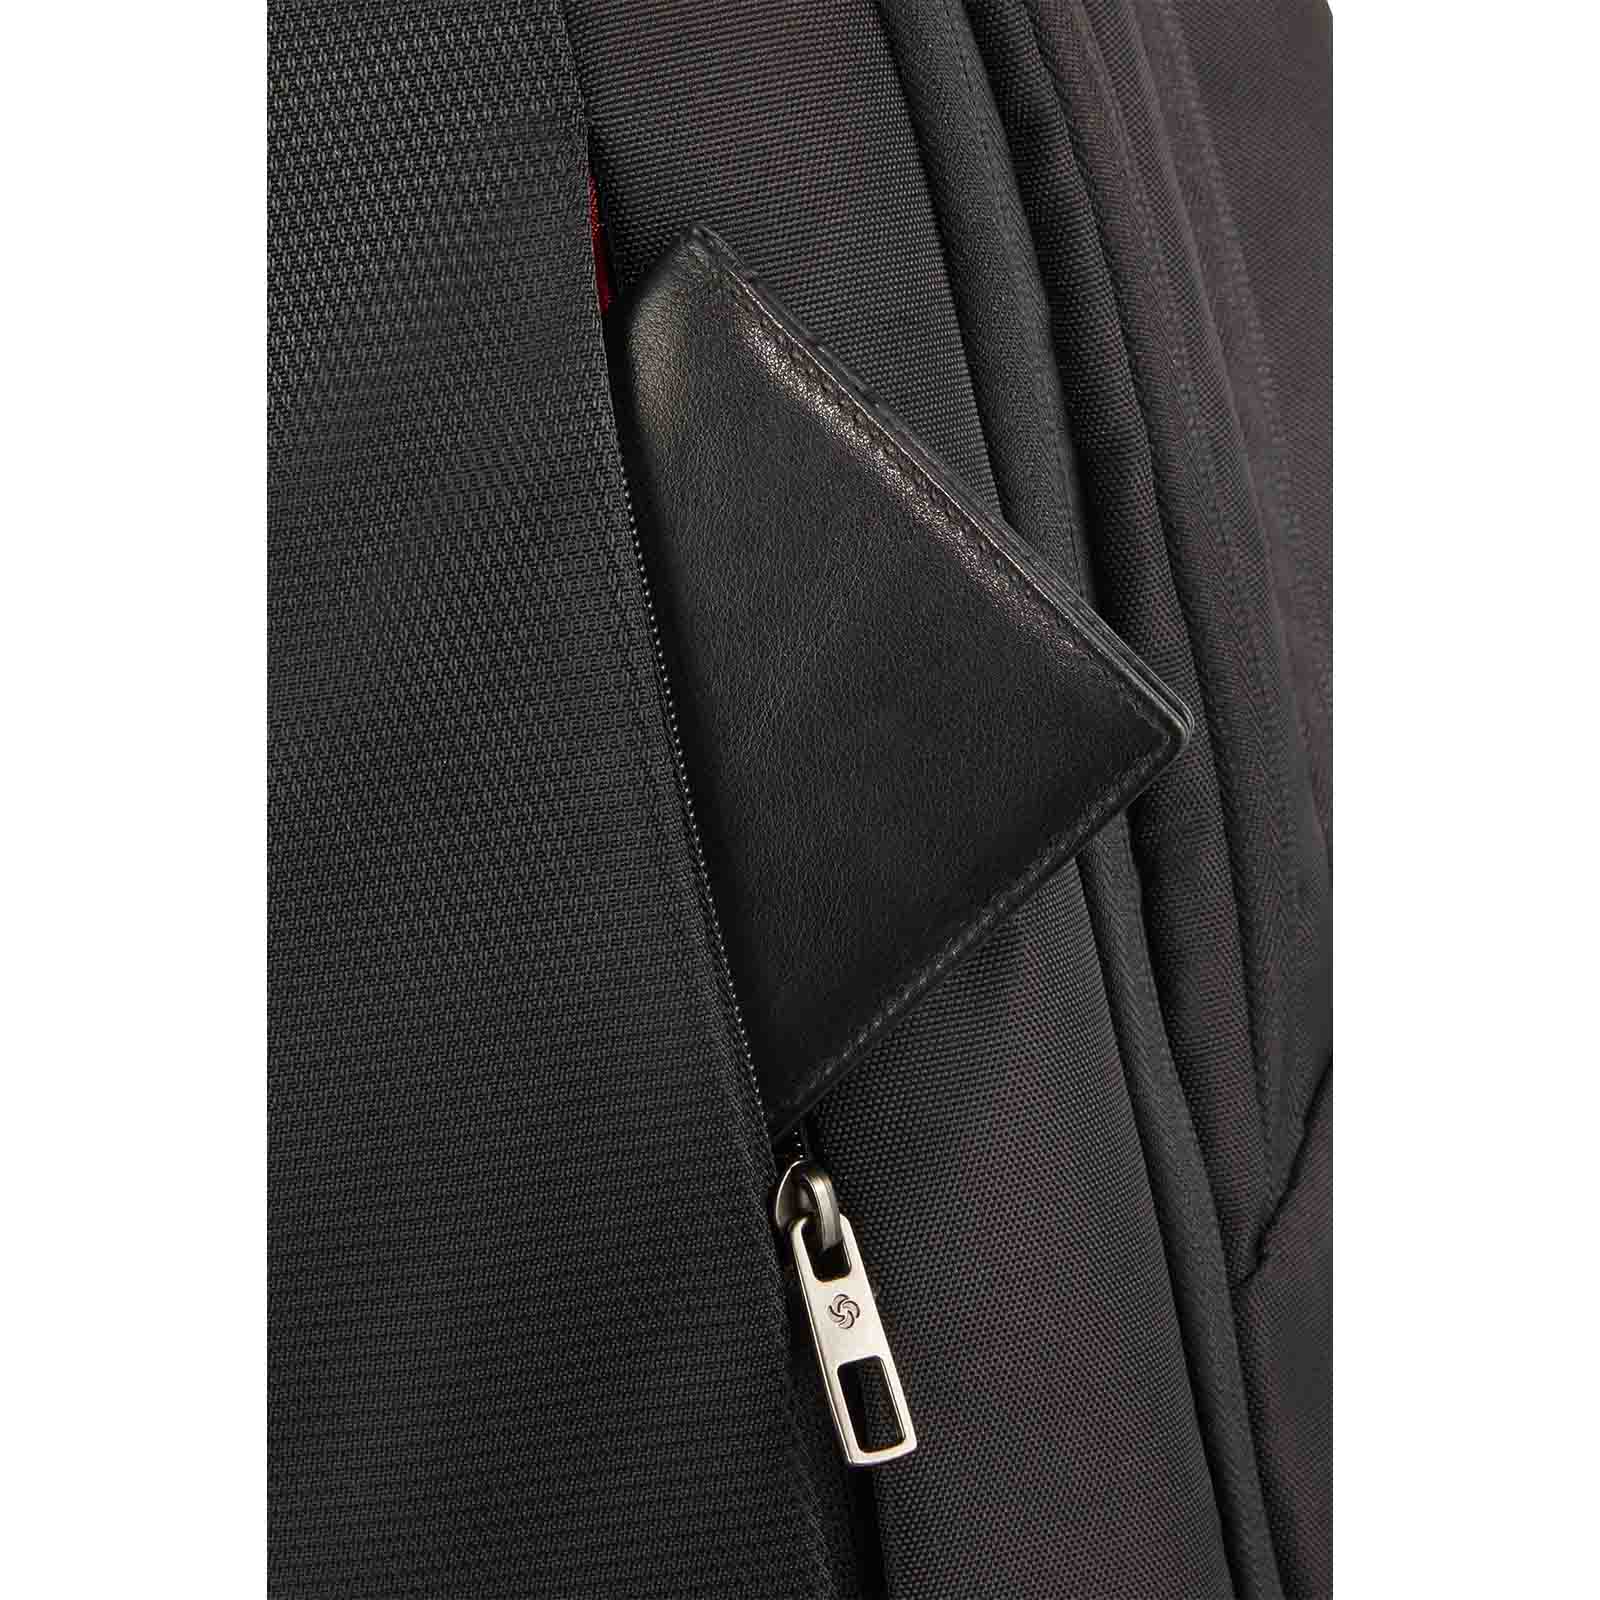 Samsonite-Guardit-2-17-Inch-Laptop-Backpack-Hidden-Pocket